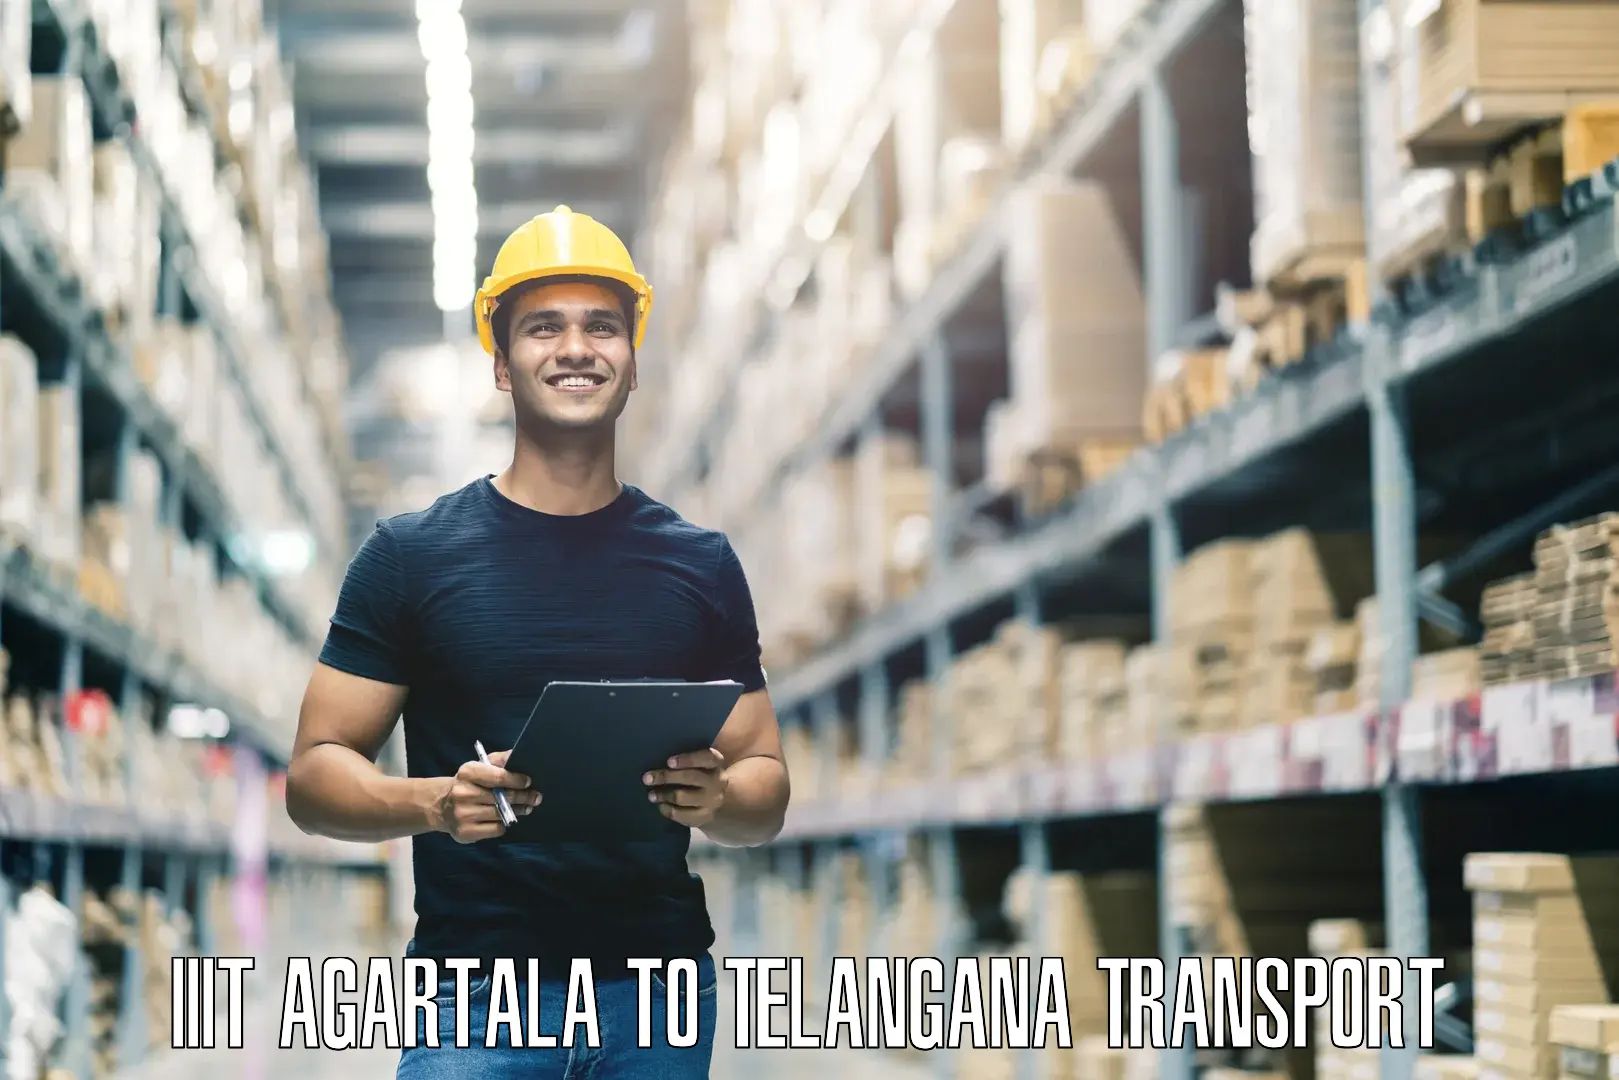 Interstate goods transport IIIT Agartala to Manneguda